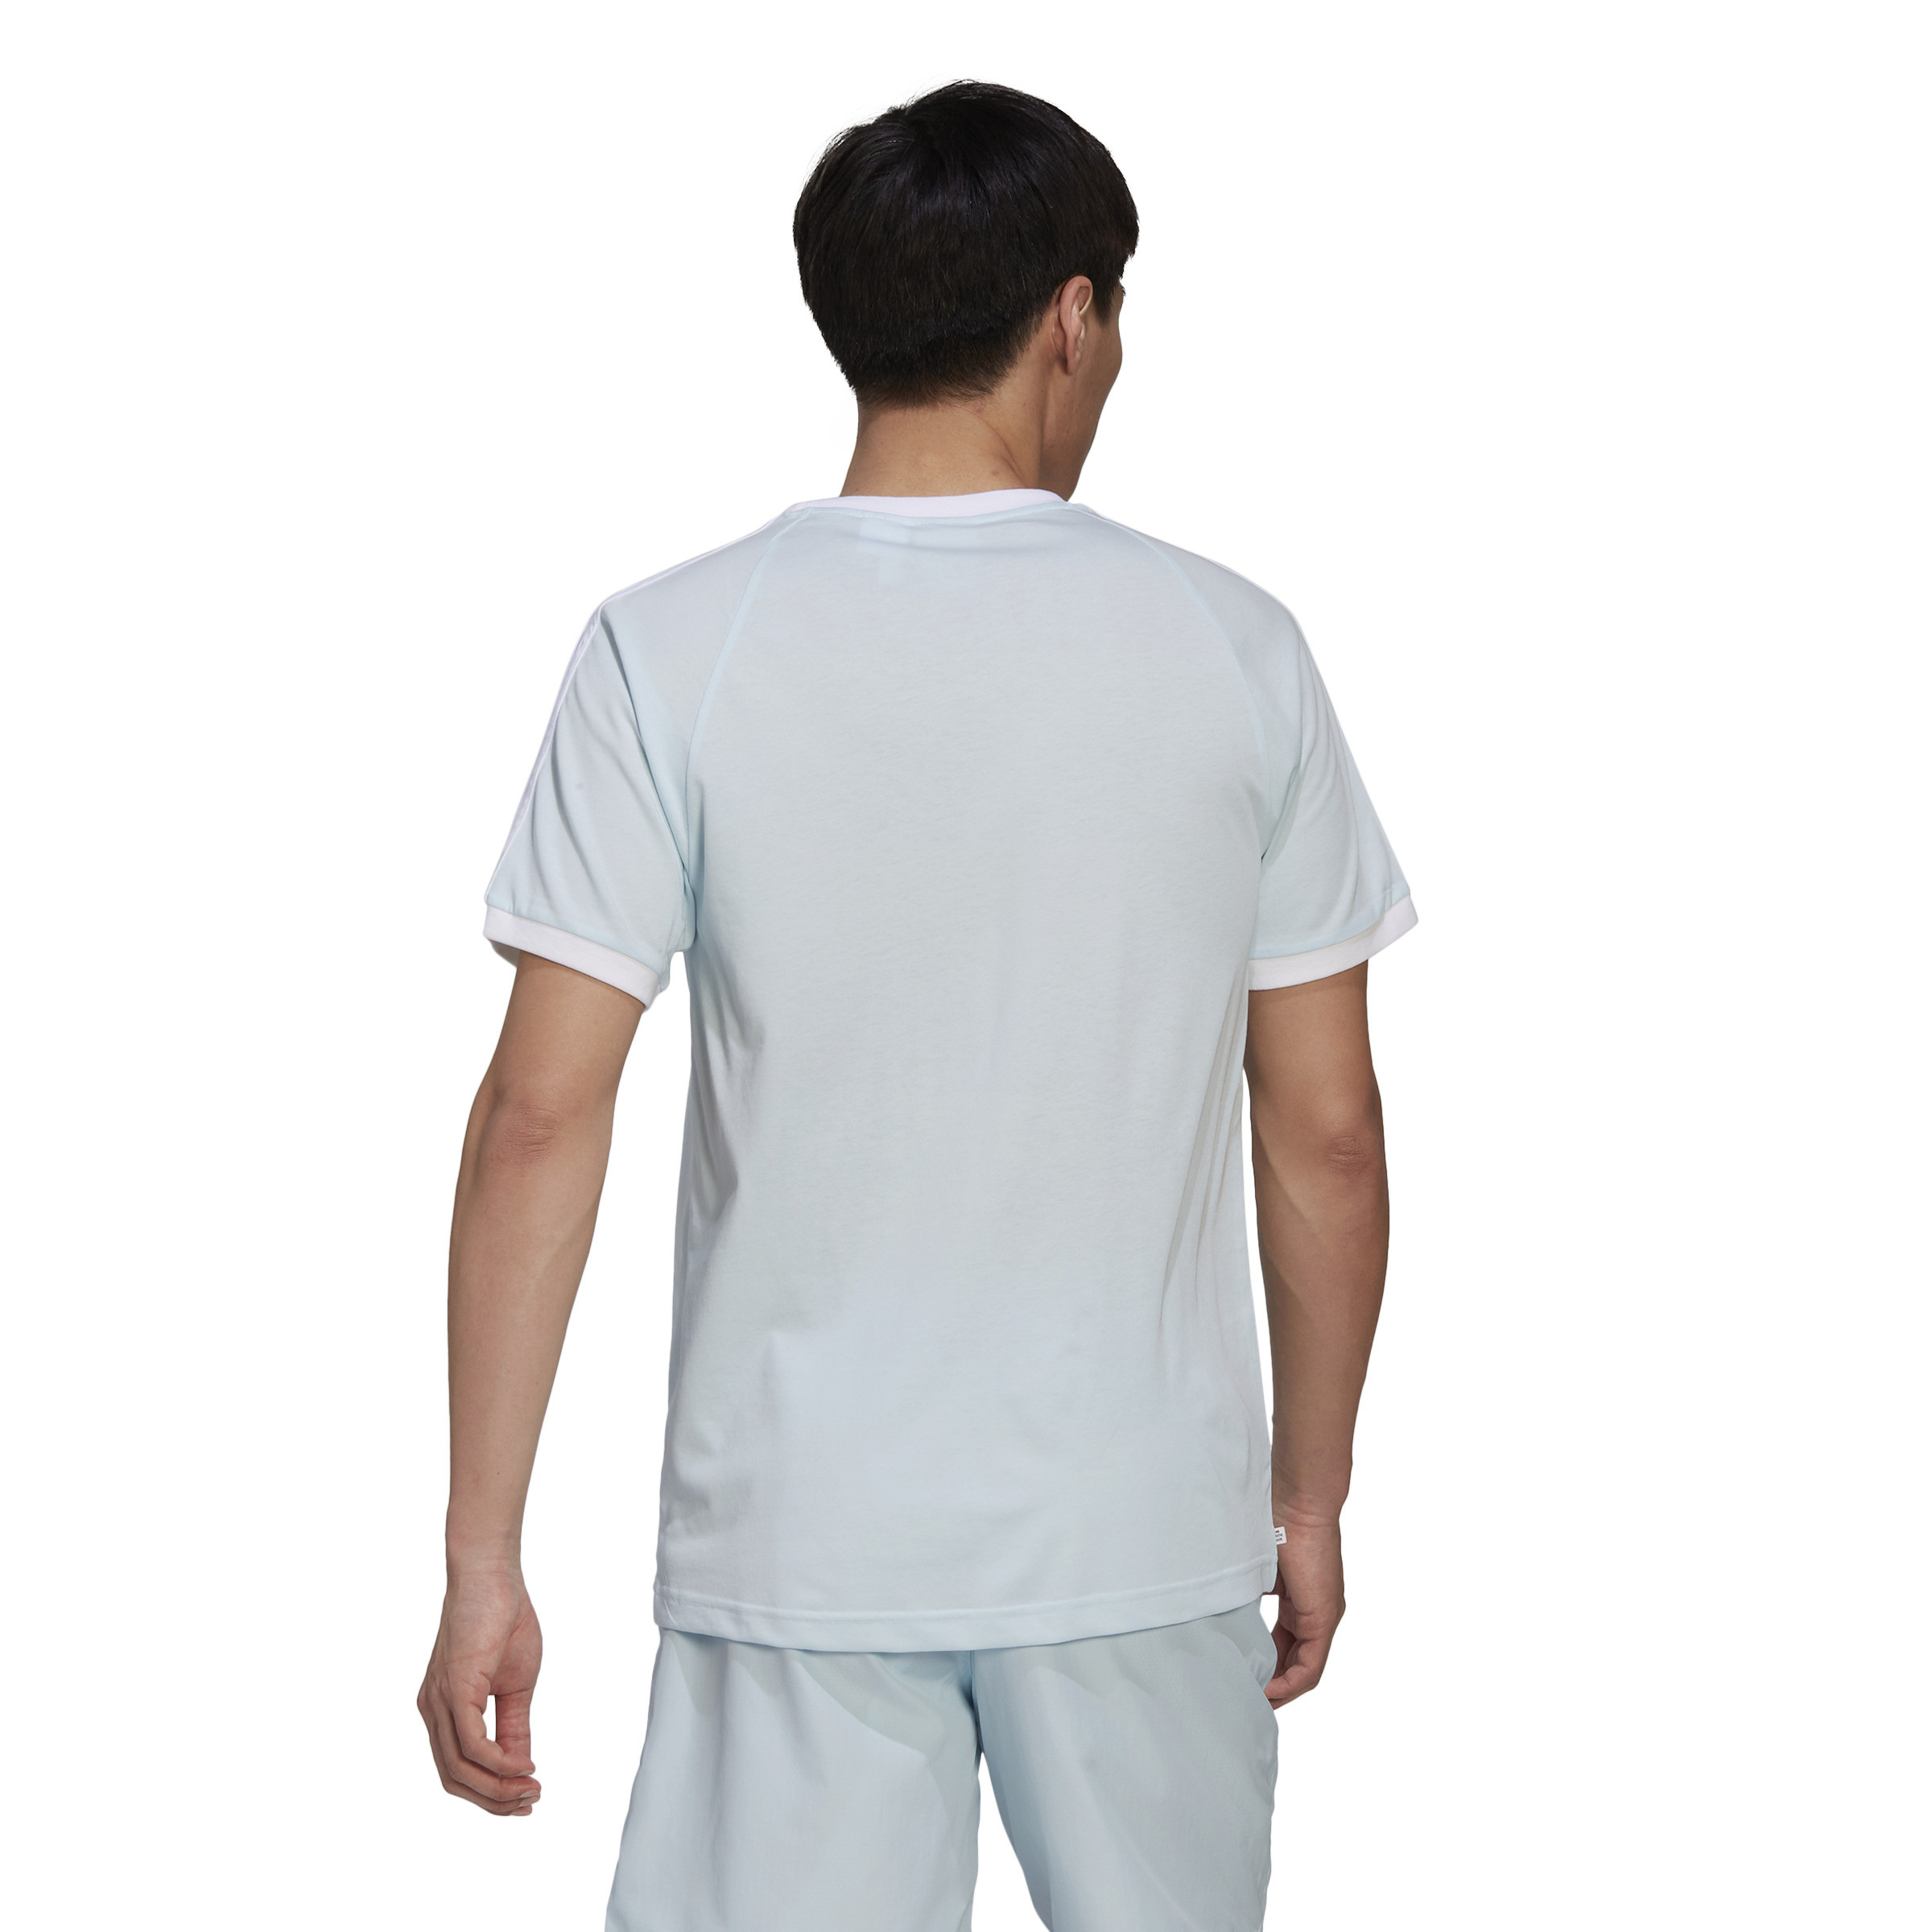 Adidas - T-shirt adicolor, Azzurro, large image number 2